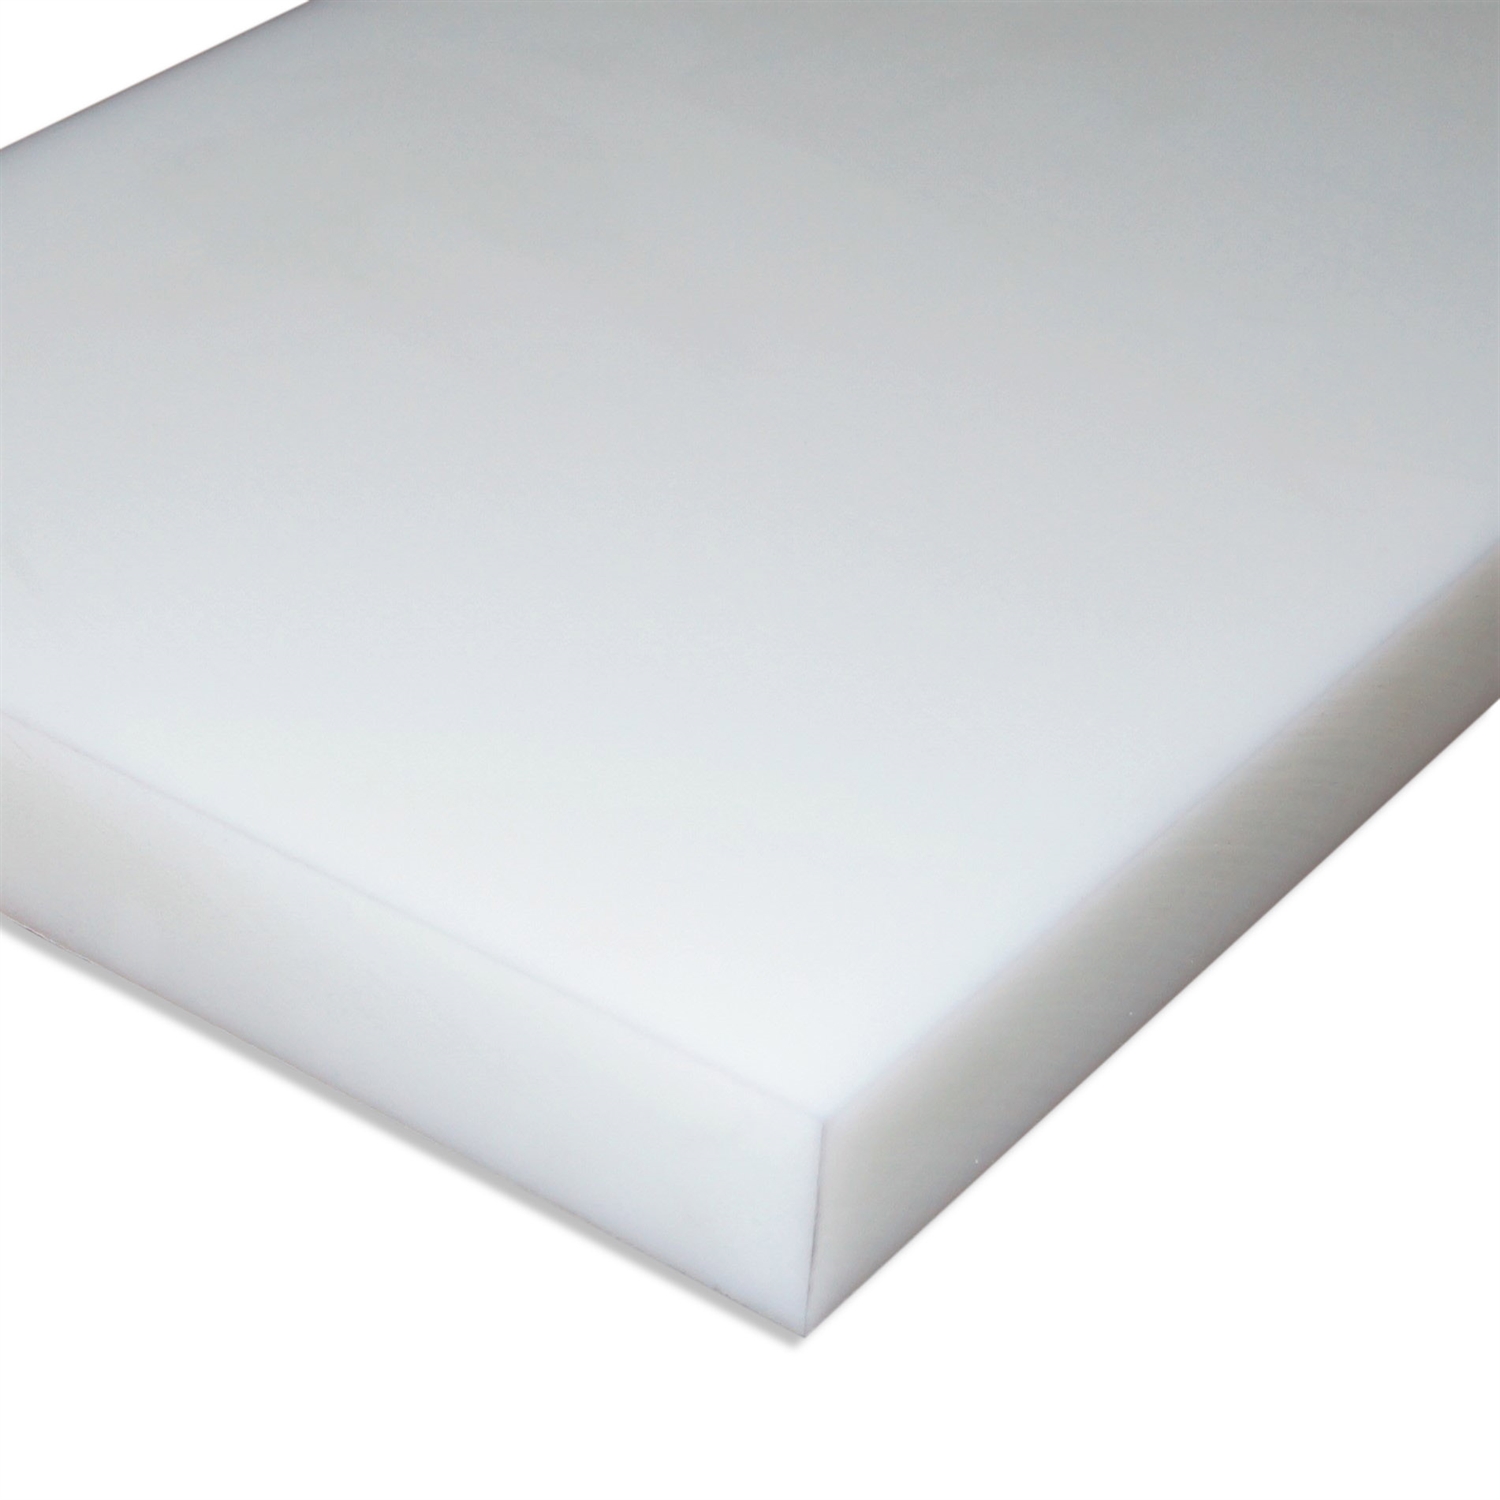 POM natur 1000x1000x5mm weiß Platte Zuschnitt Kunststoff Halbzeug 